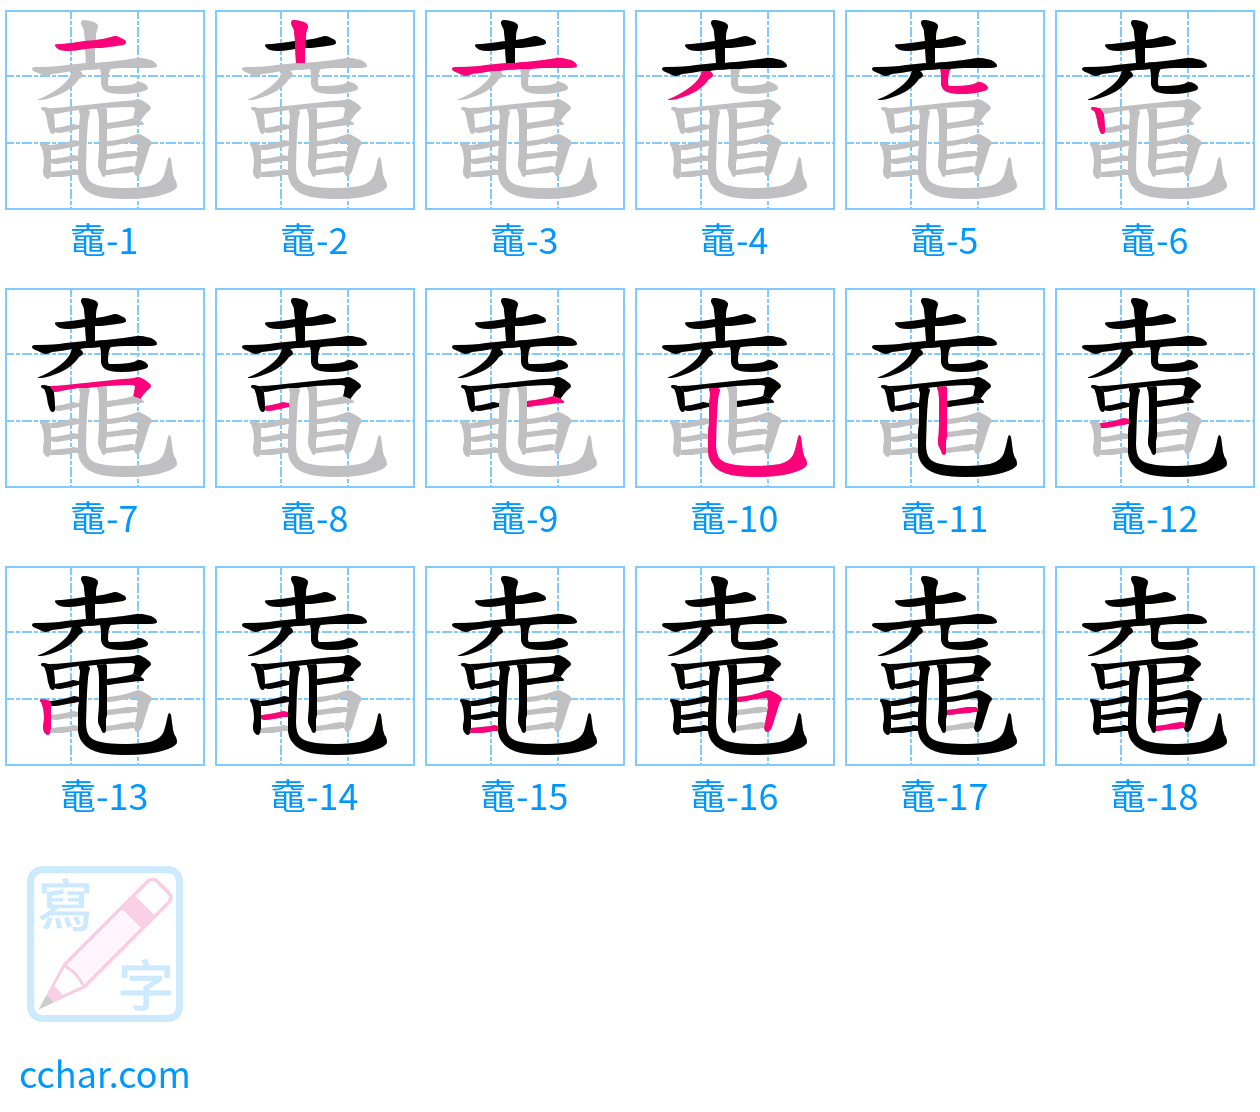 鼀 stroke order step-by-step diagram